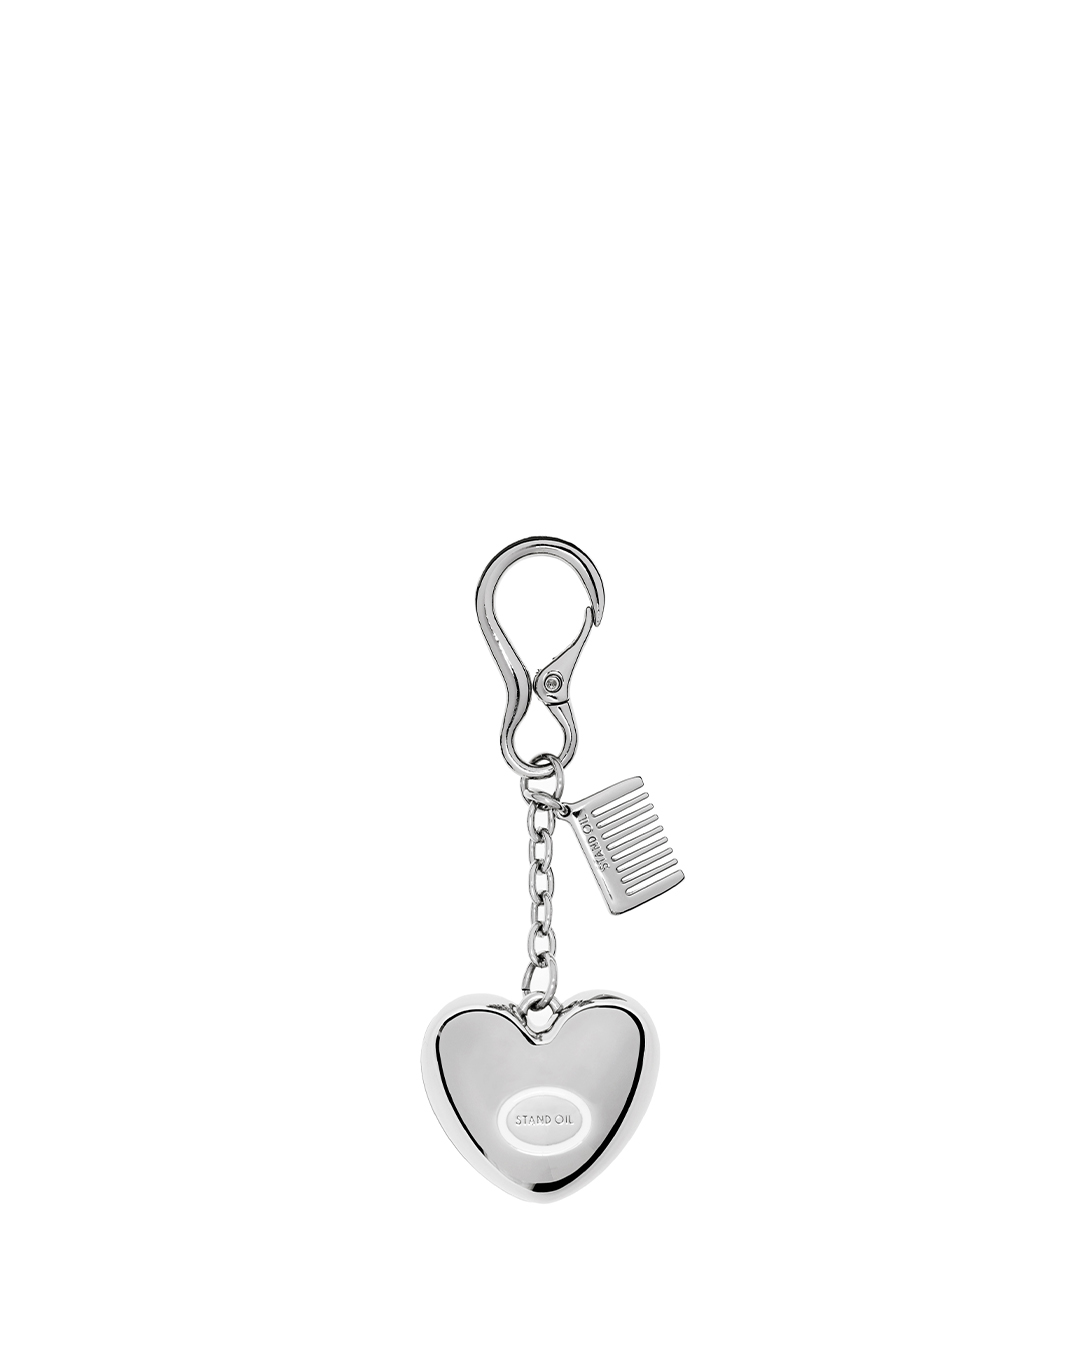 韓國STAND OIL-Mirror Heart Keyring  / Silver